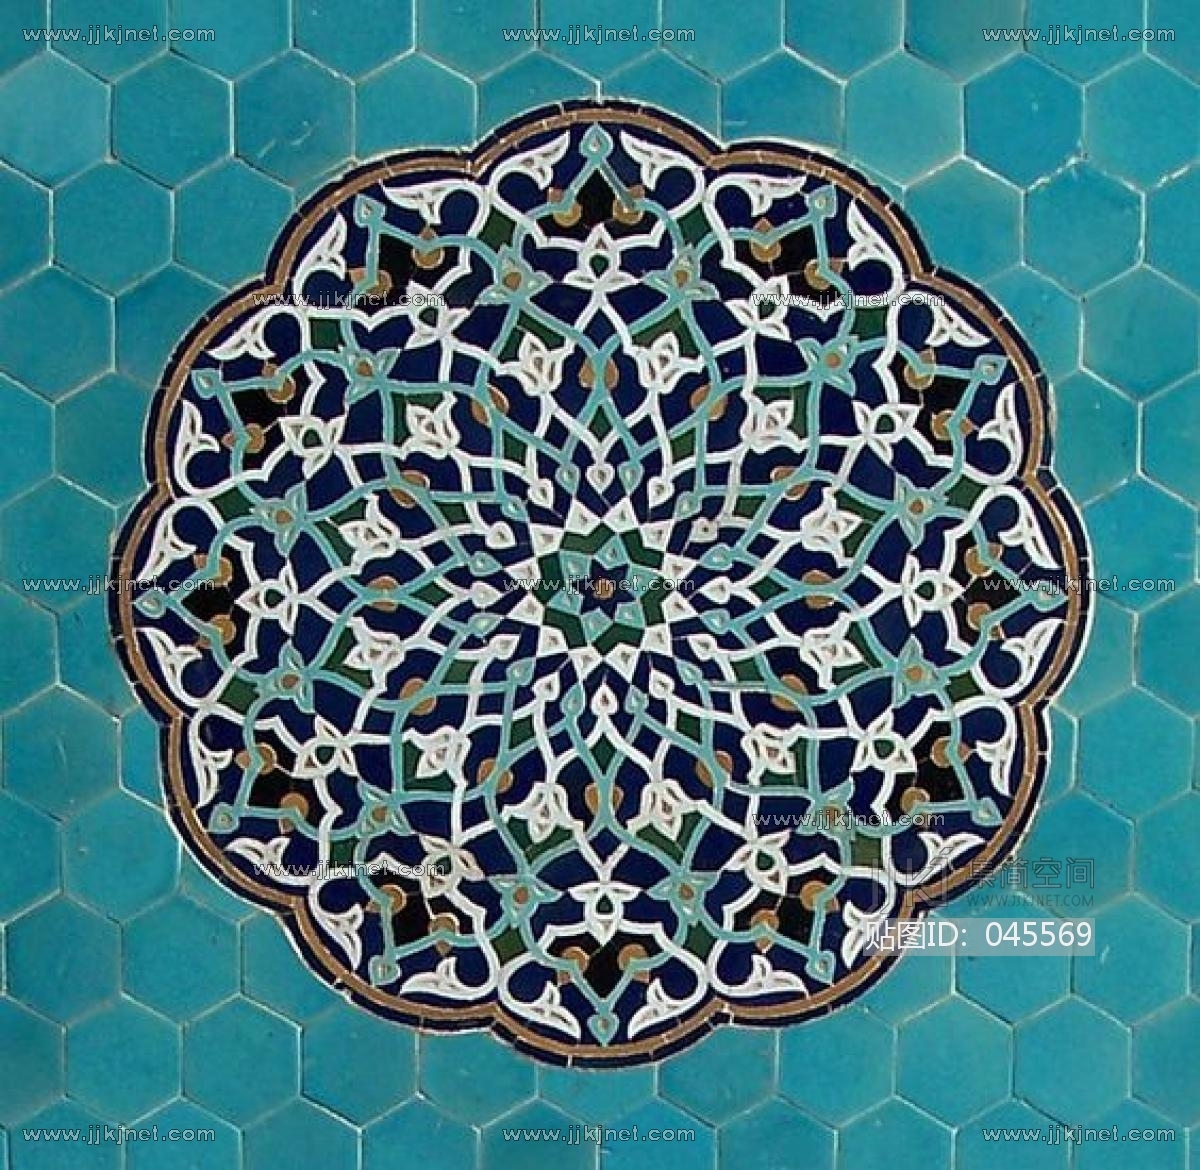 欧式地中海花纹瓷砖 (15)材质贴图下载-【集简空间】「每日更新」